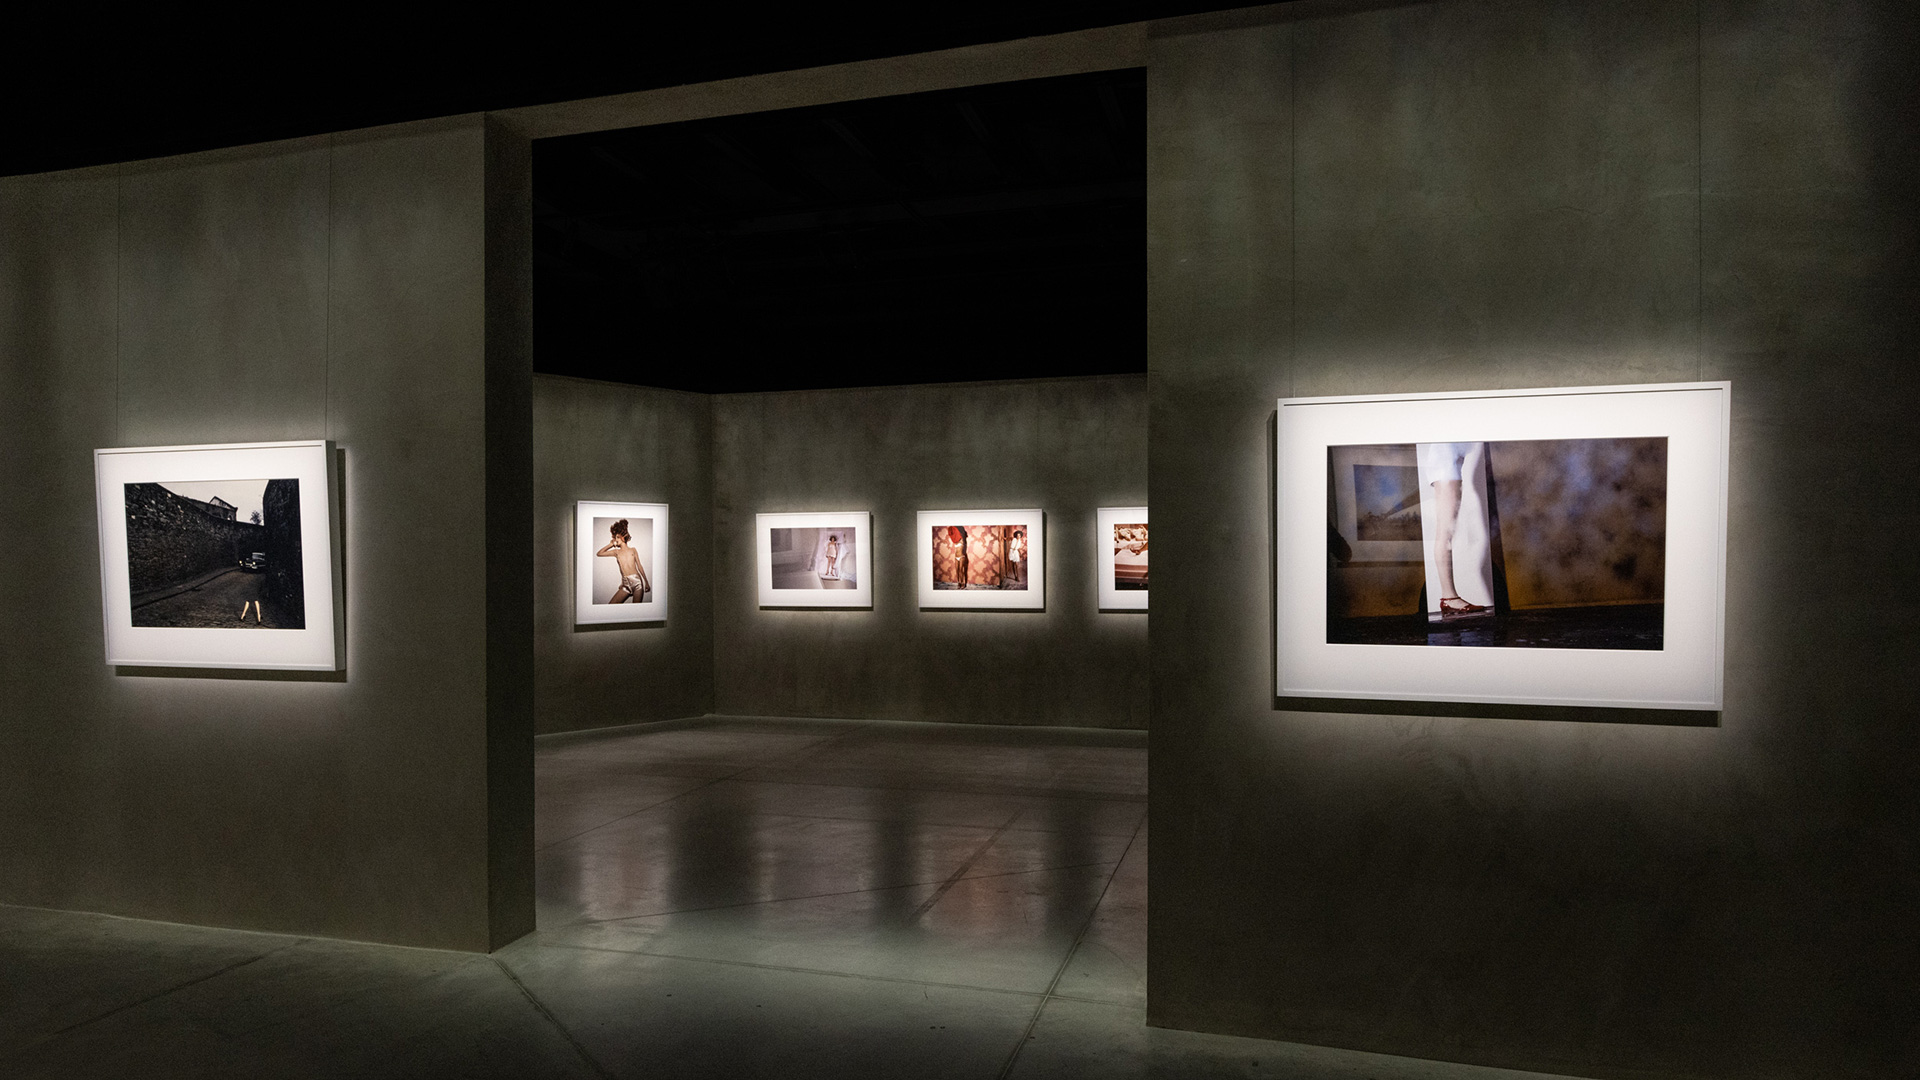 Guy Bourdin Storyteller è la mostra ospitata ad Armani Silos dedicata al fotografo francese che approfondisce la sua visione come storyteller. 